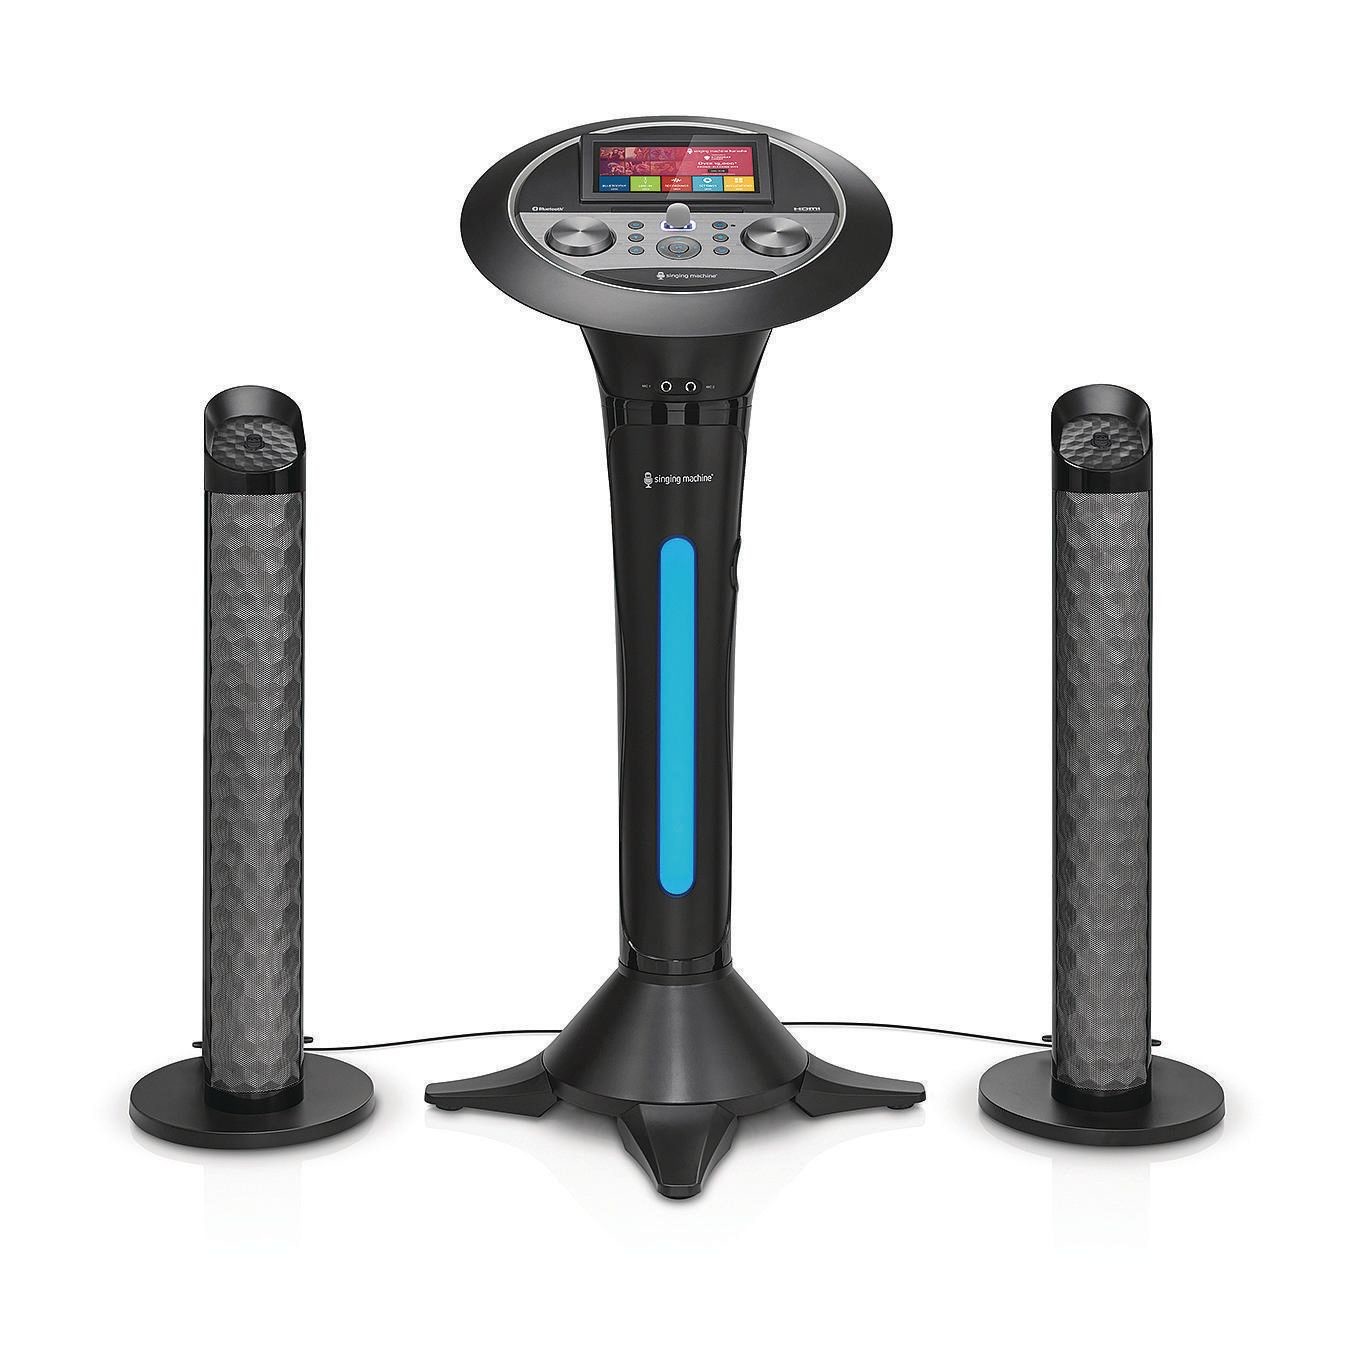 Buy The Singing Machine® Premium Wifi Pedestal Karaoke System at